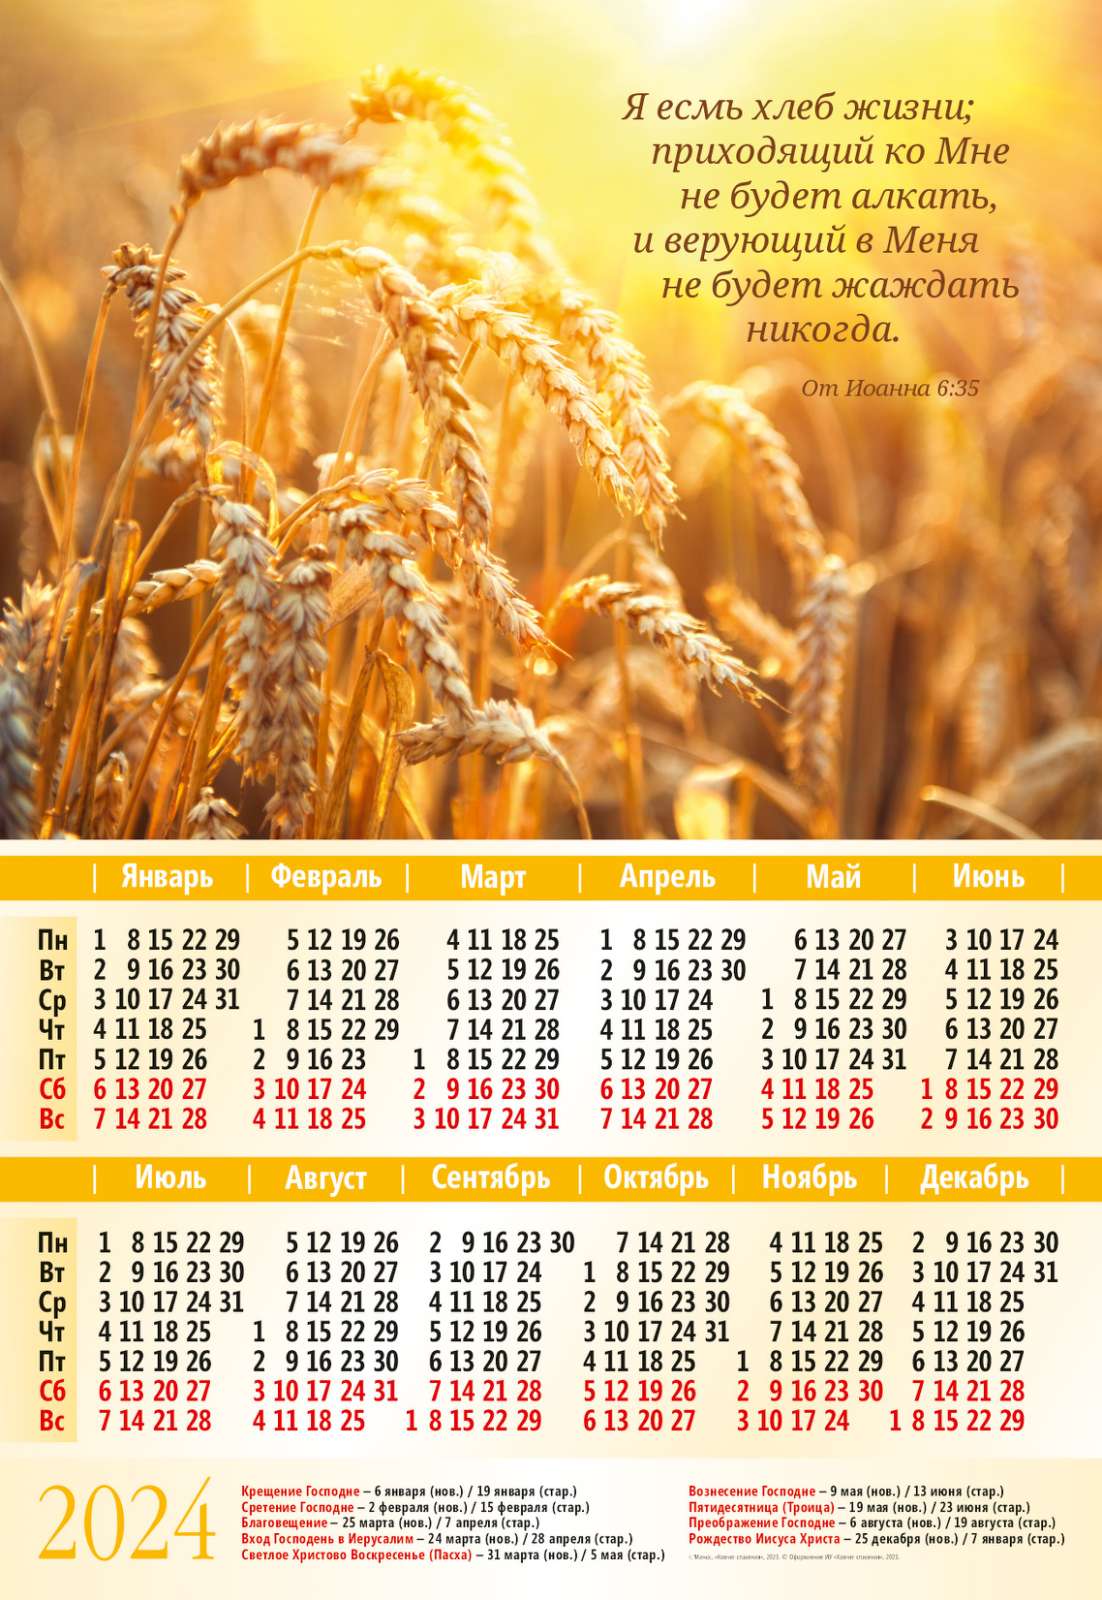 Календарь листовой "Я есмь хлеб жизни" 2024 год